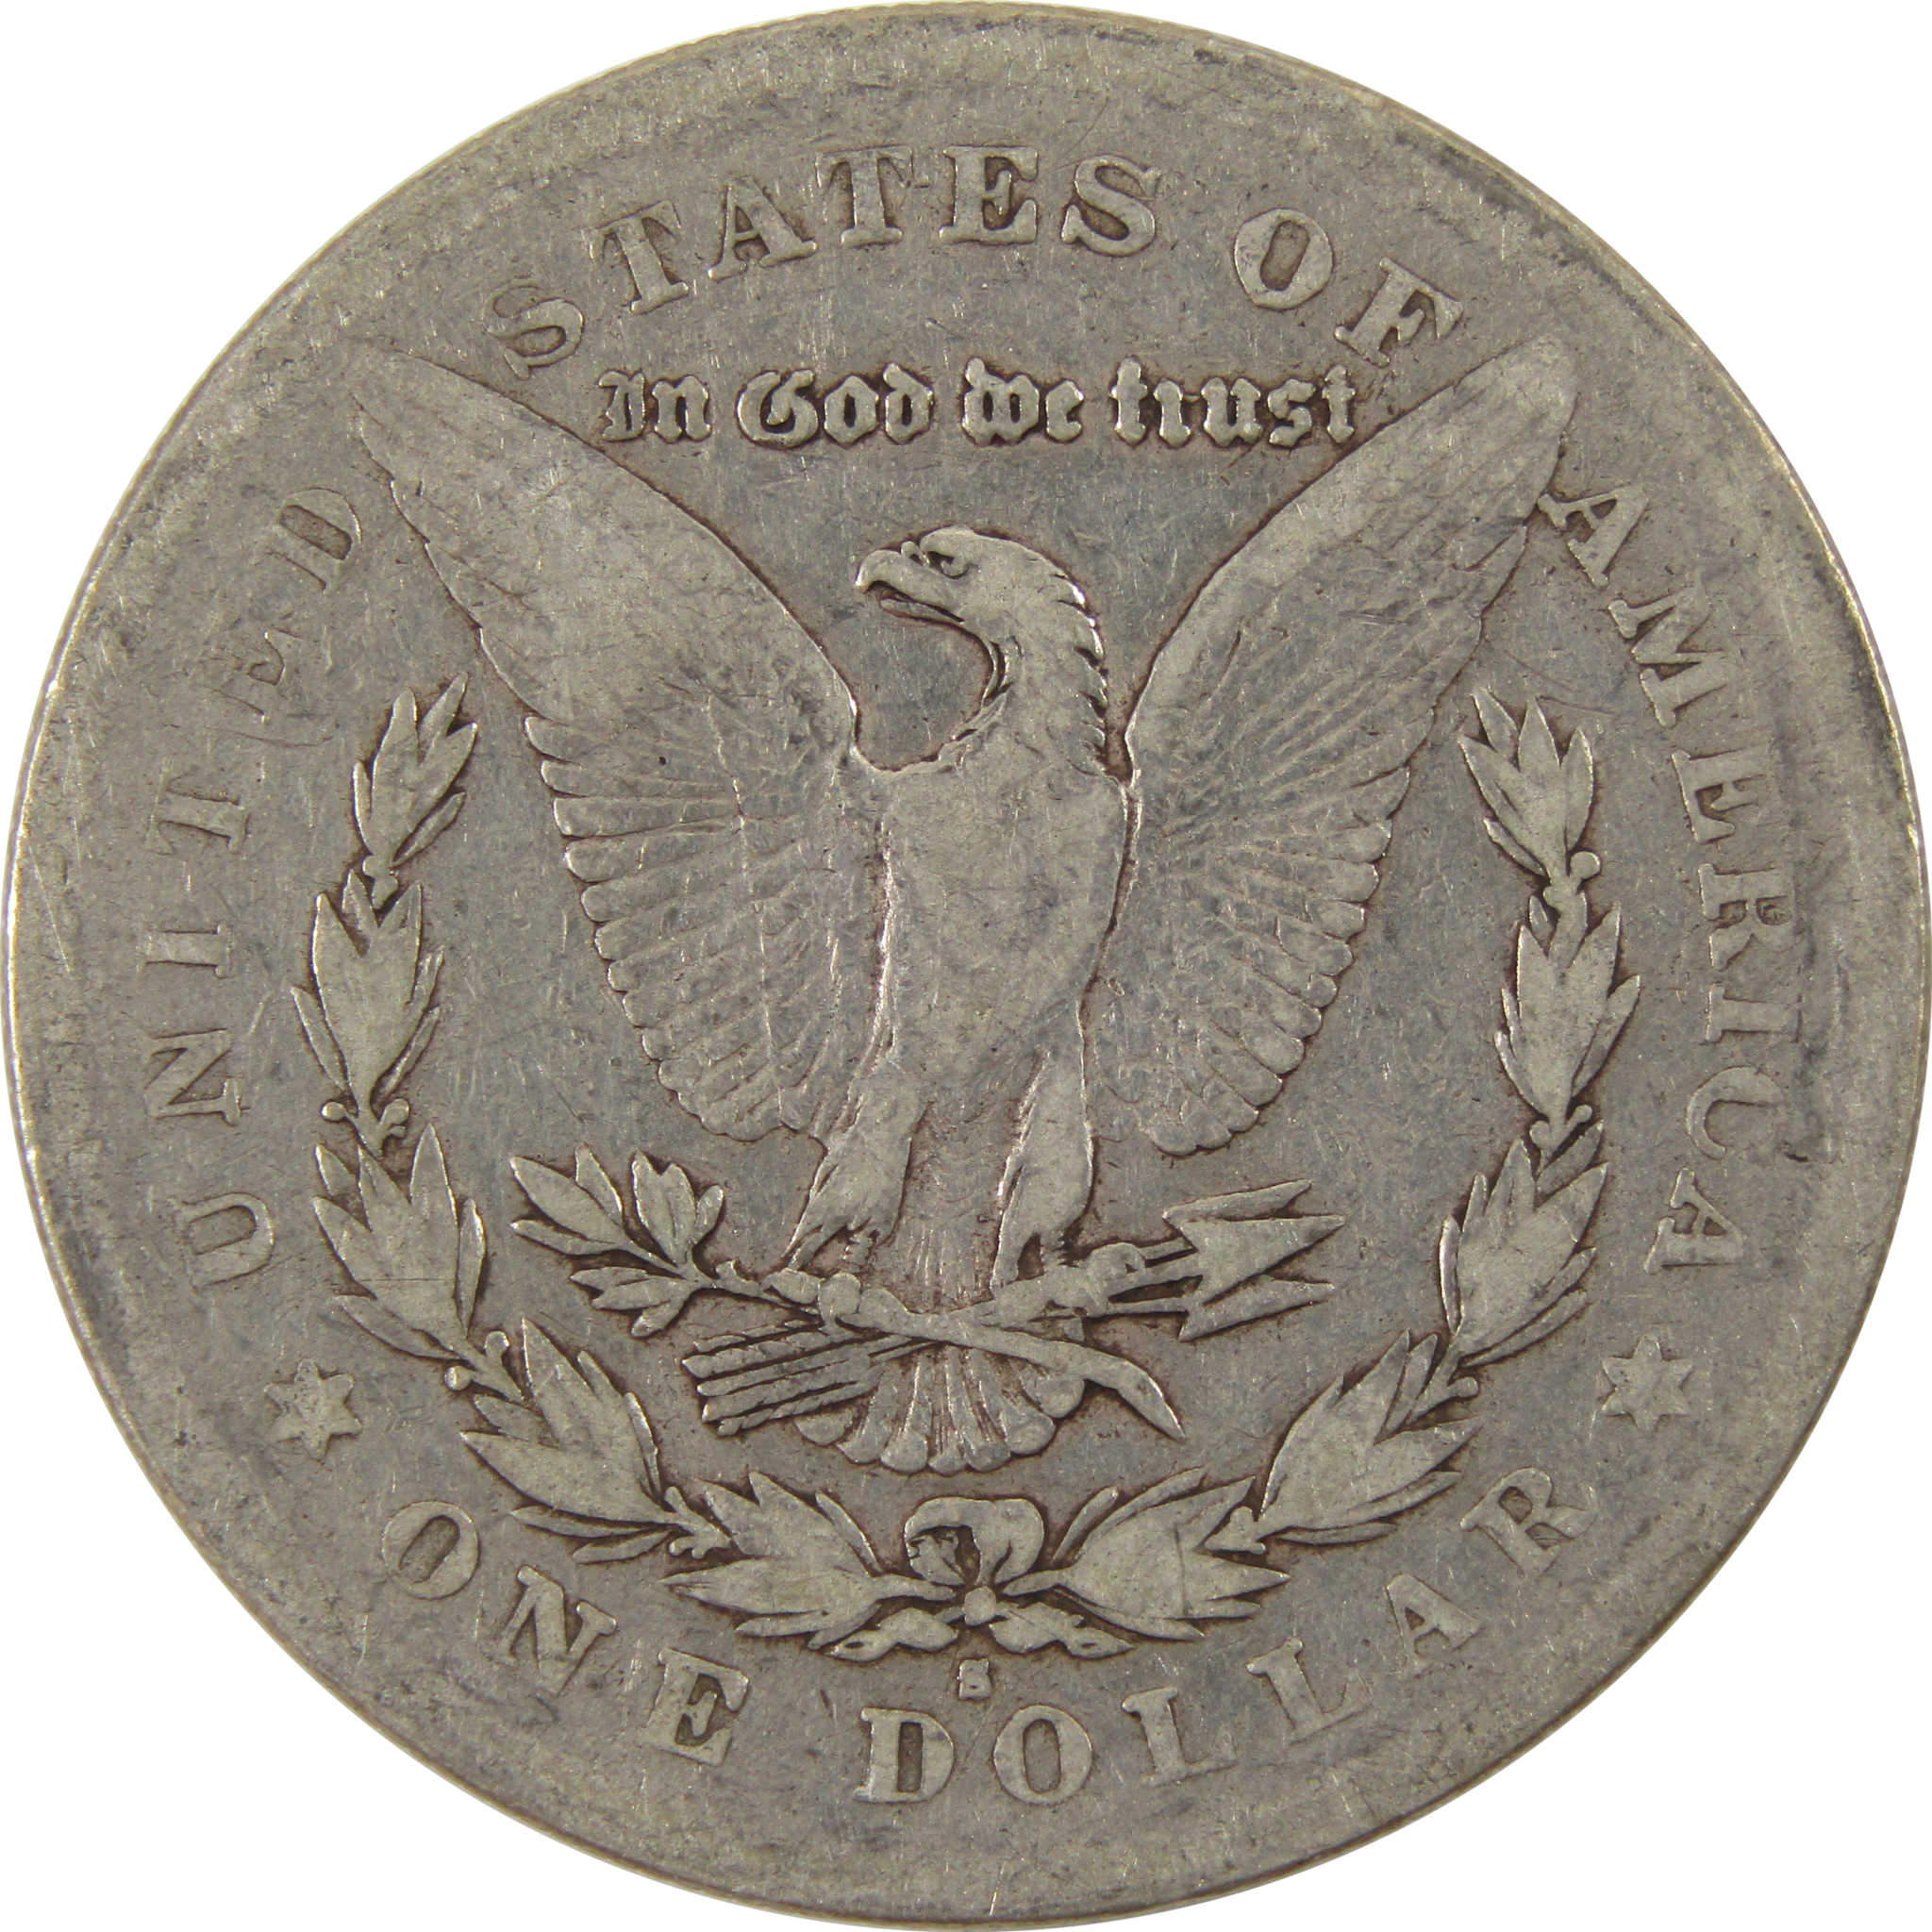 1879 S Rev 78 Morgan Dollar VG Very Good 90% Silver $1 Coin SKU:I8001 - Morgan coin - Morgan silver dollar - Morgan silver dollar for sale - Profile Coins &amp; Collectibles